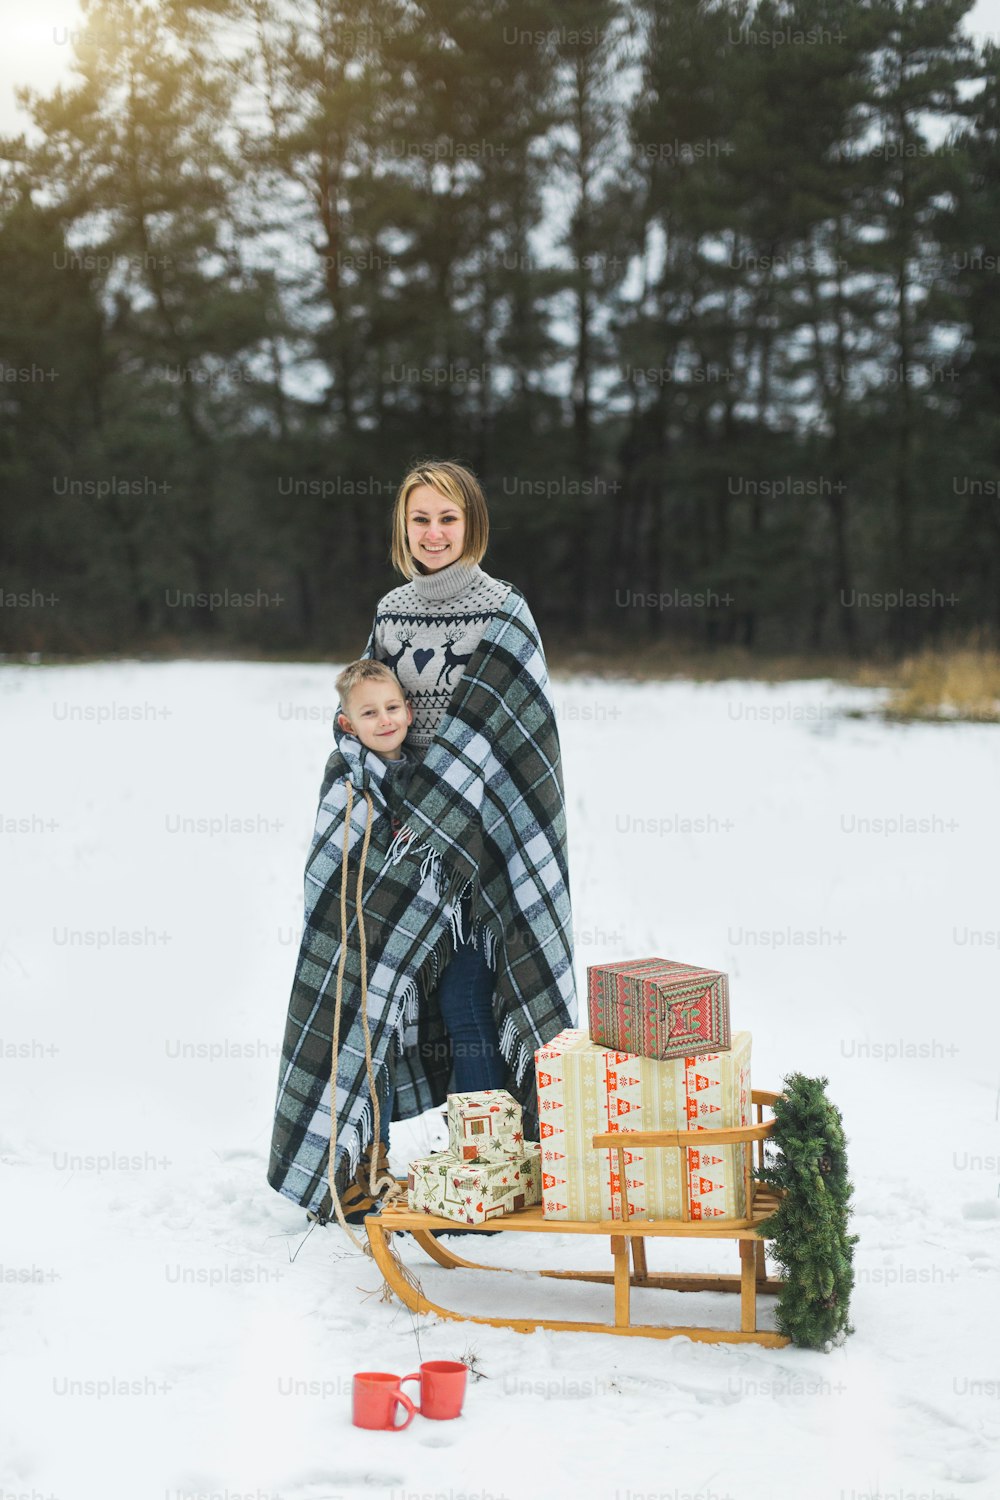 Bella giovane madre con suo figlio coperto di plaid a scacchi, in piedi sopra lo sfondo della foresta invernale, tirando la slitta di legno decorata con la ghirlanda di Natale e i regali del regalo su di essa.